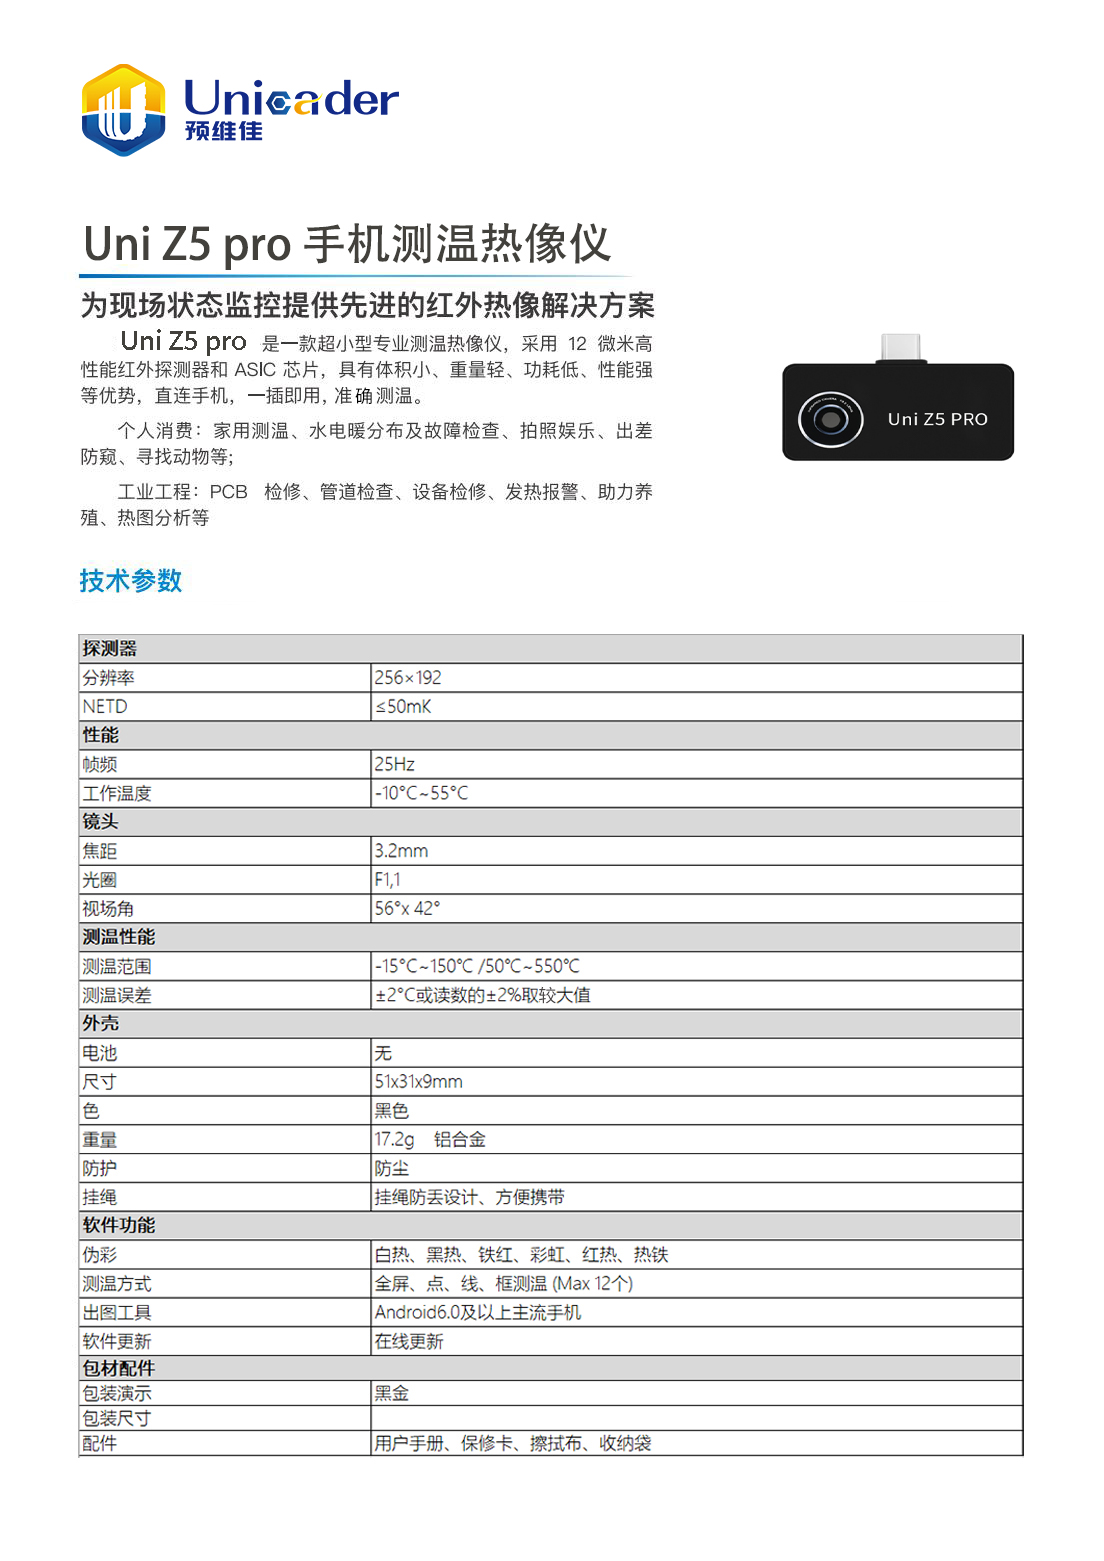 1-预维佳UNI Z5 pro.jpg